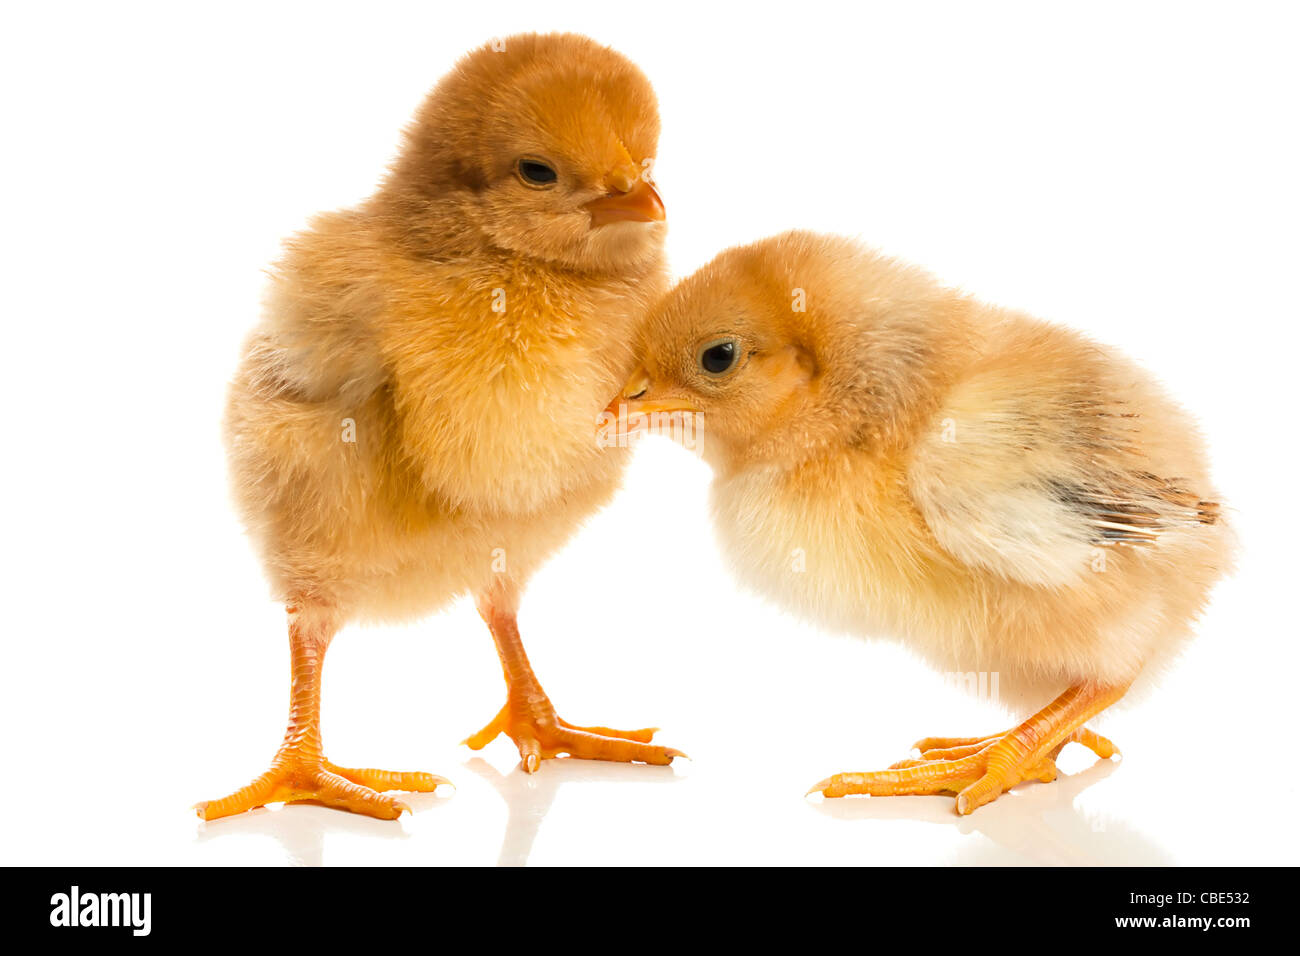 Paire de cute baby chicks contre un fond blanc Banque D'Images